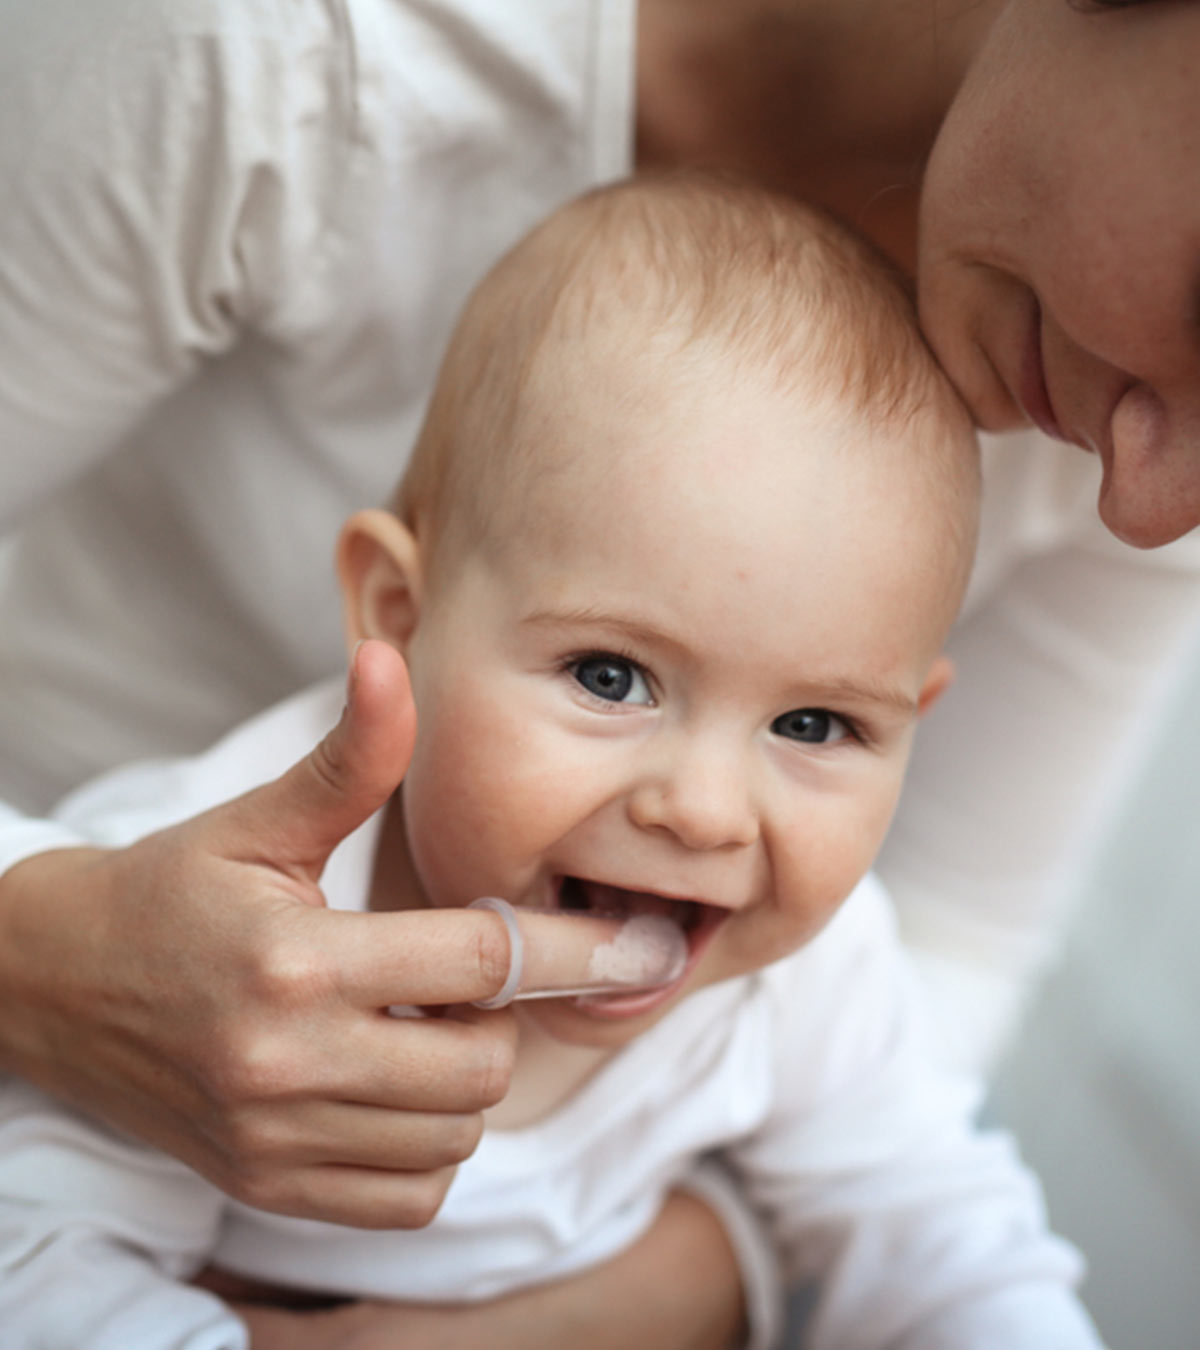 婴儿出牙和腹泻:症状、原因和治疗